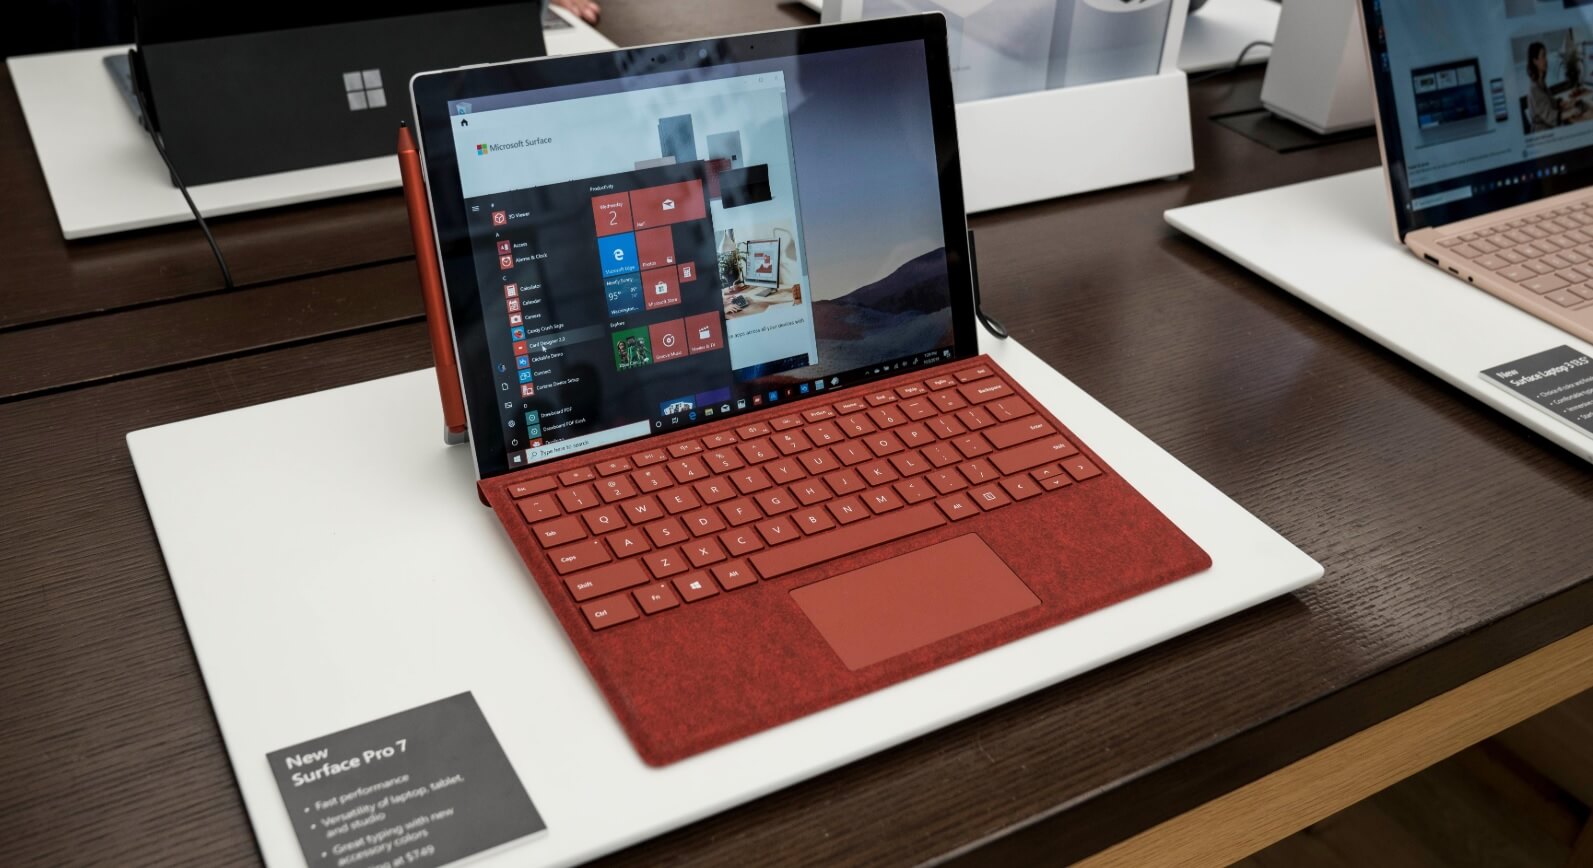 La Surface Pro 7 est une tablette destinée aux créatifs, mais représente-t-elle une véritable mise à niveau ?